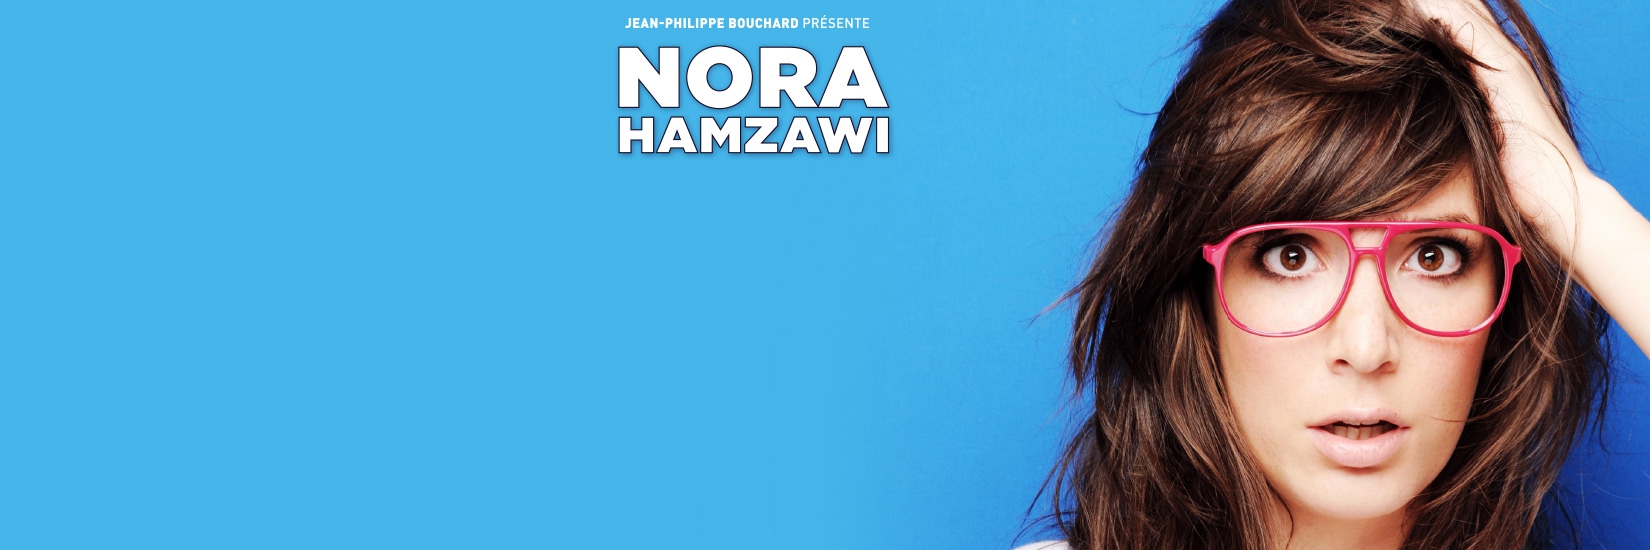 NORA HAMZAWI AFFICHE Nora Hamzawi - l'humoriste qui te fait relativiser la trentaine